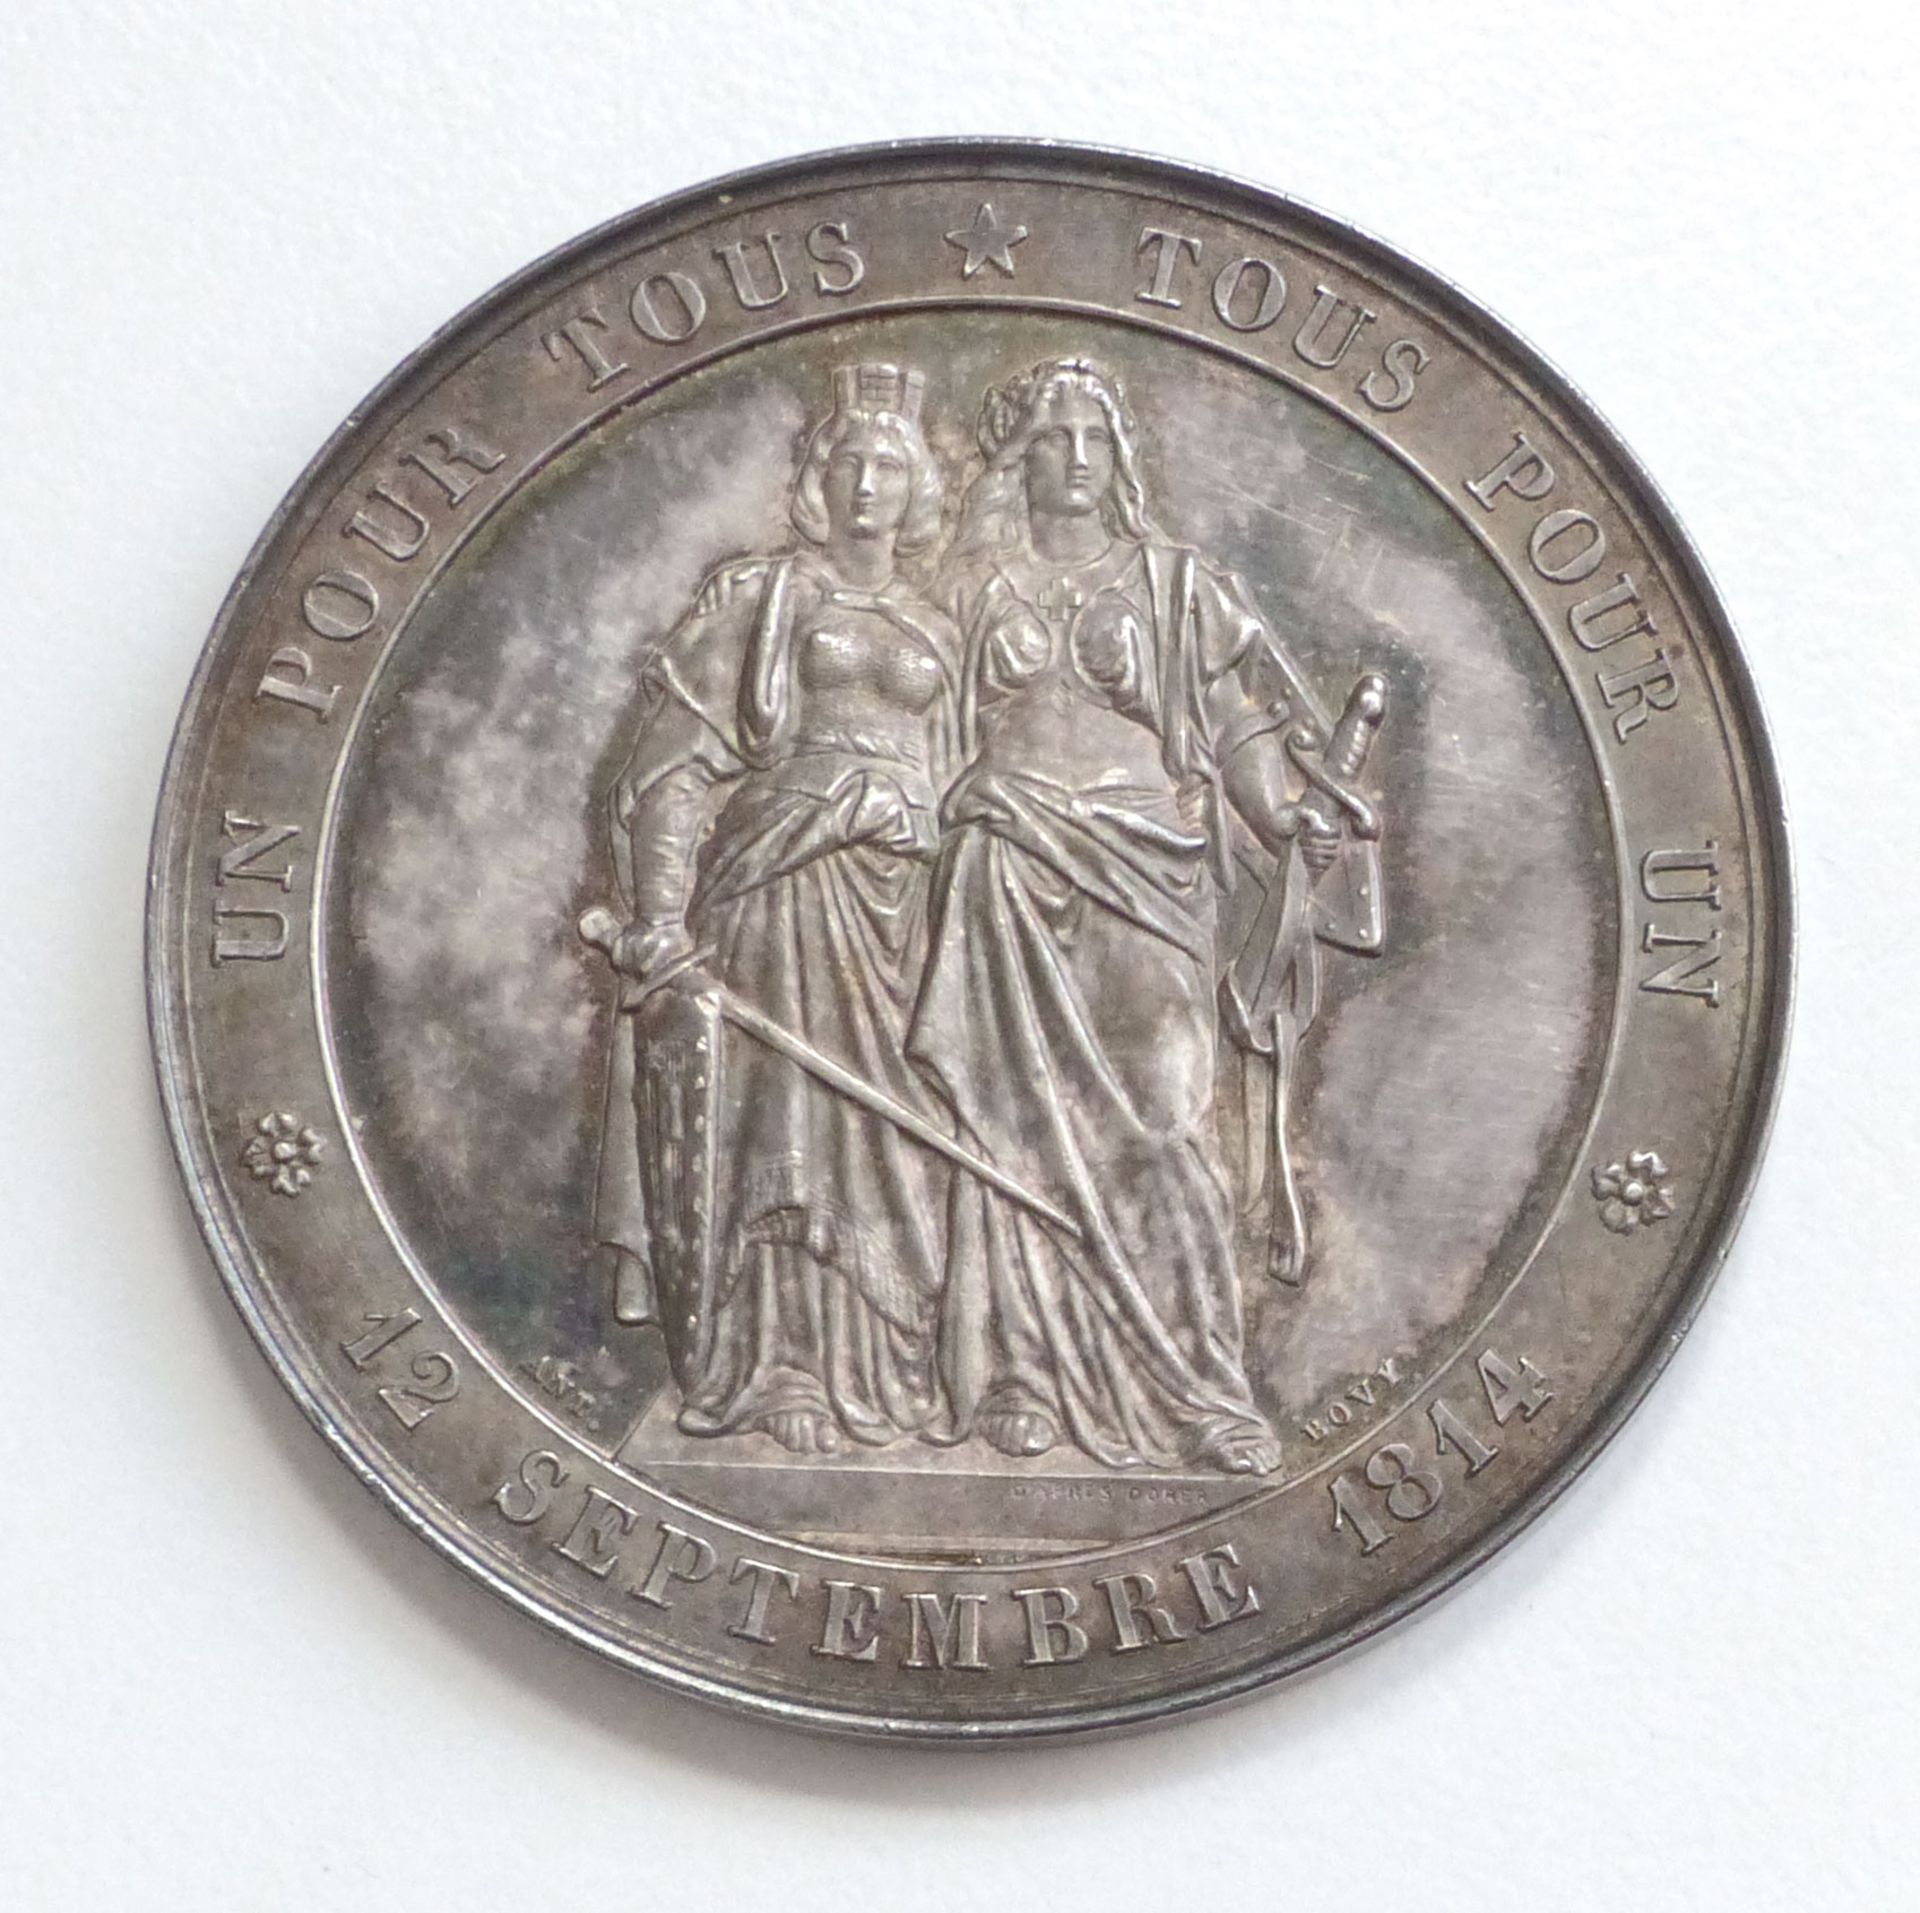 Schützen CH-Geneve Medaille Tir nationale en Faveur du Monument 1864 silber ca. 45 mm Durchm. I-II